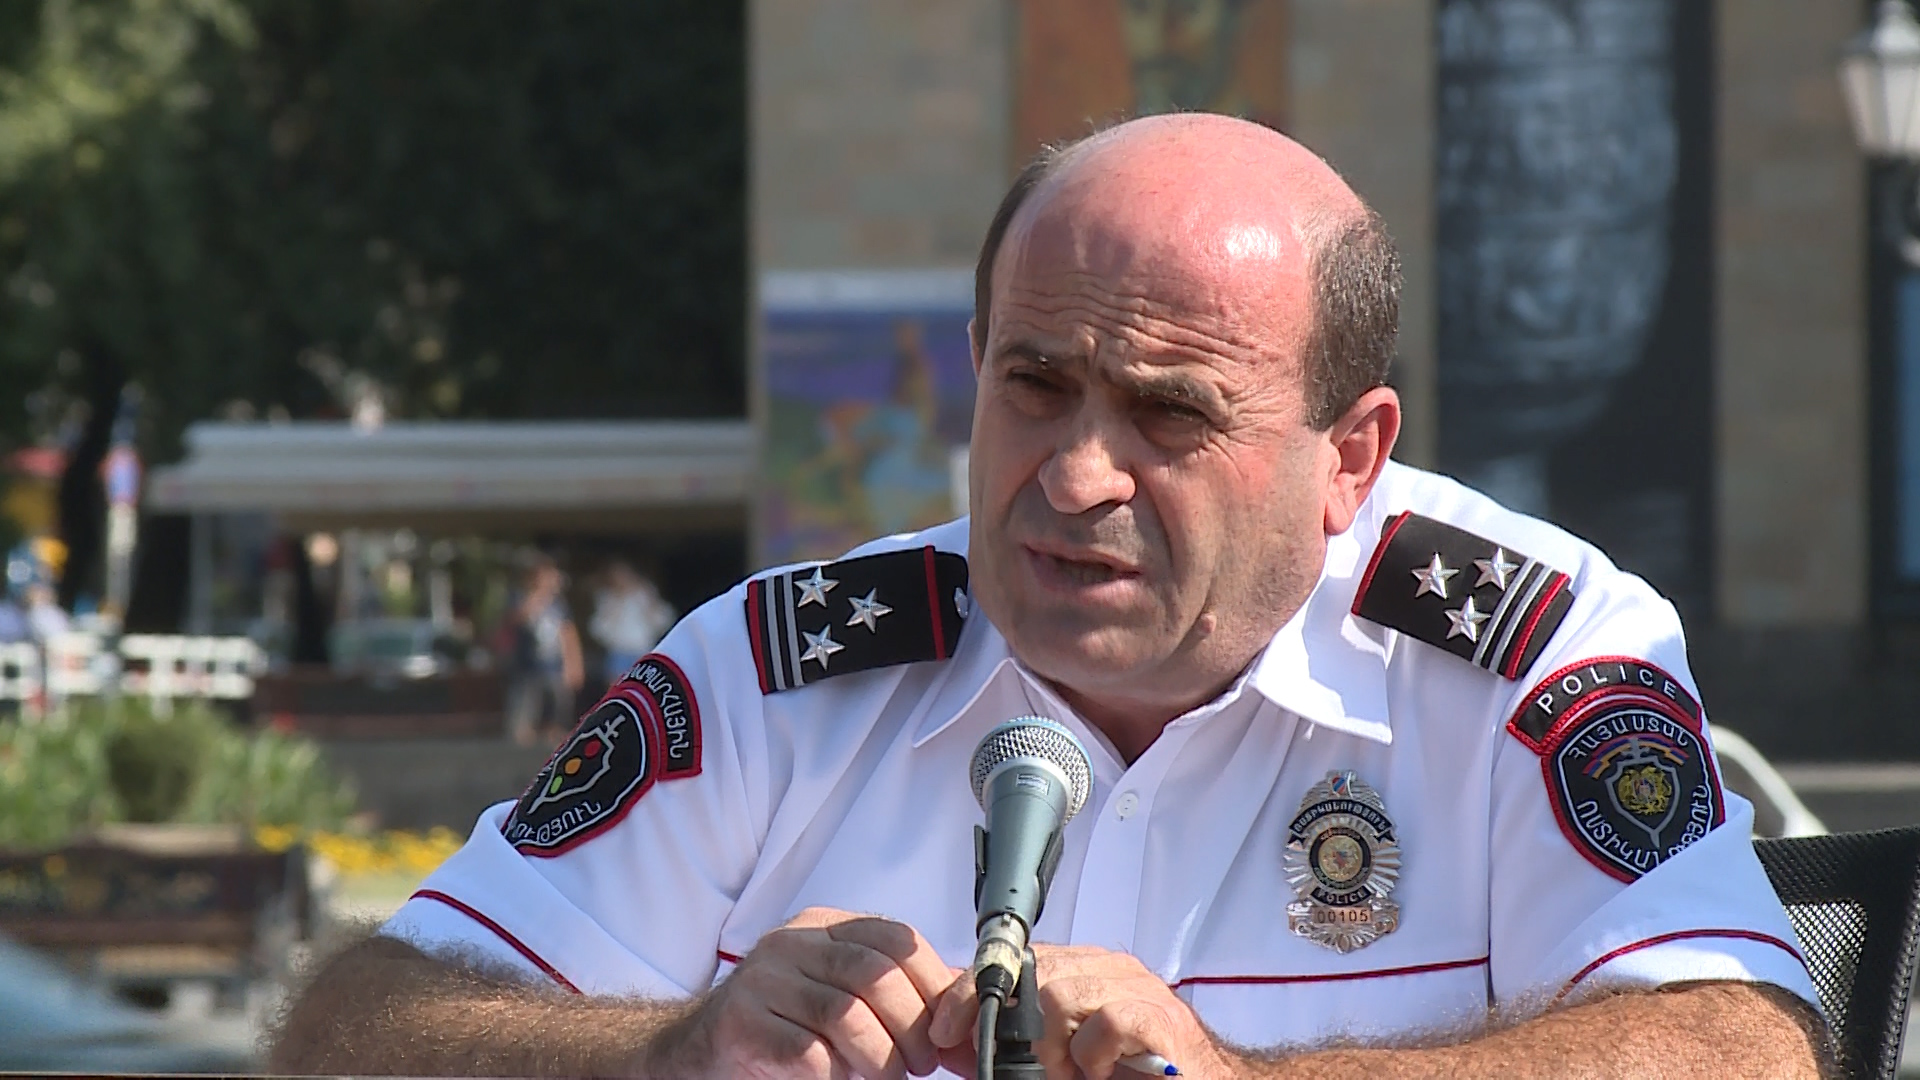 Նորիկ Սարգսյանը նշանակվել է Ճանապարհային ոստիկանության պետ